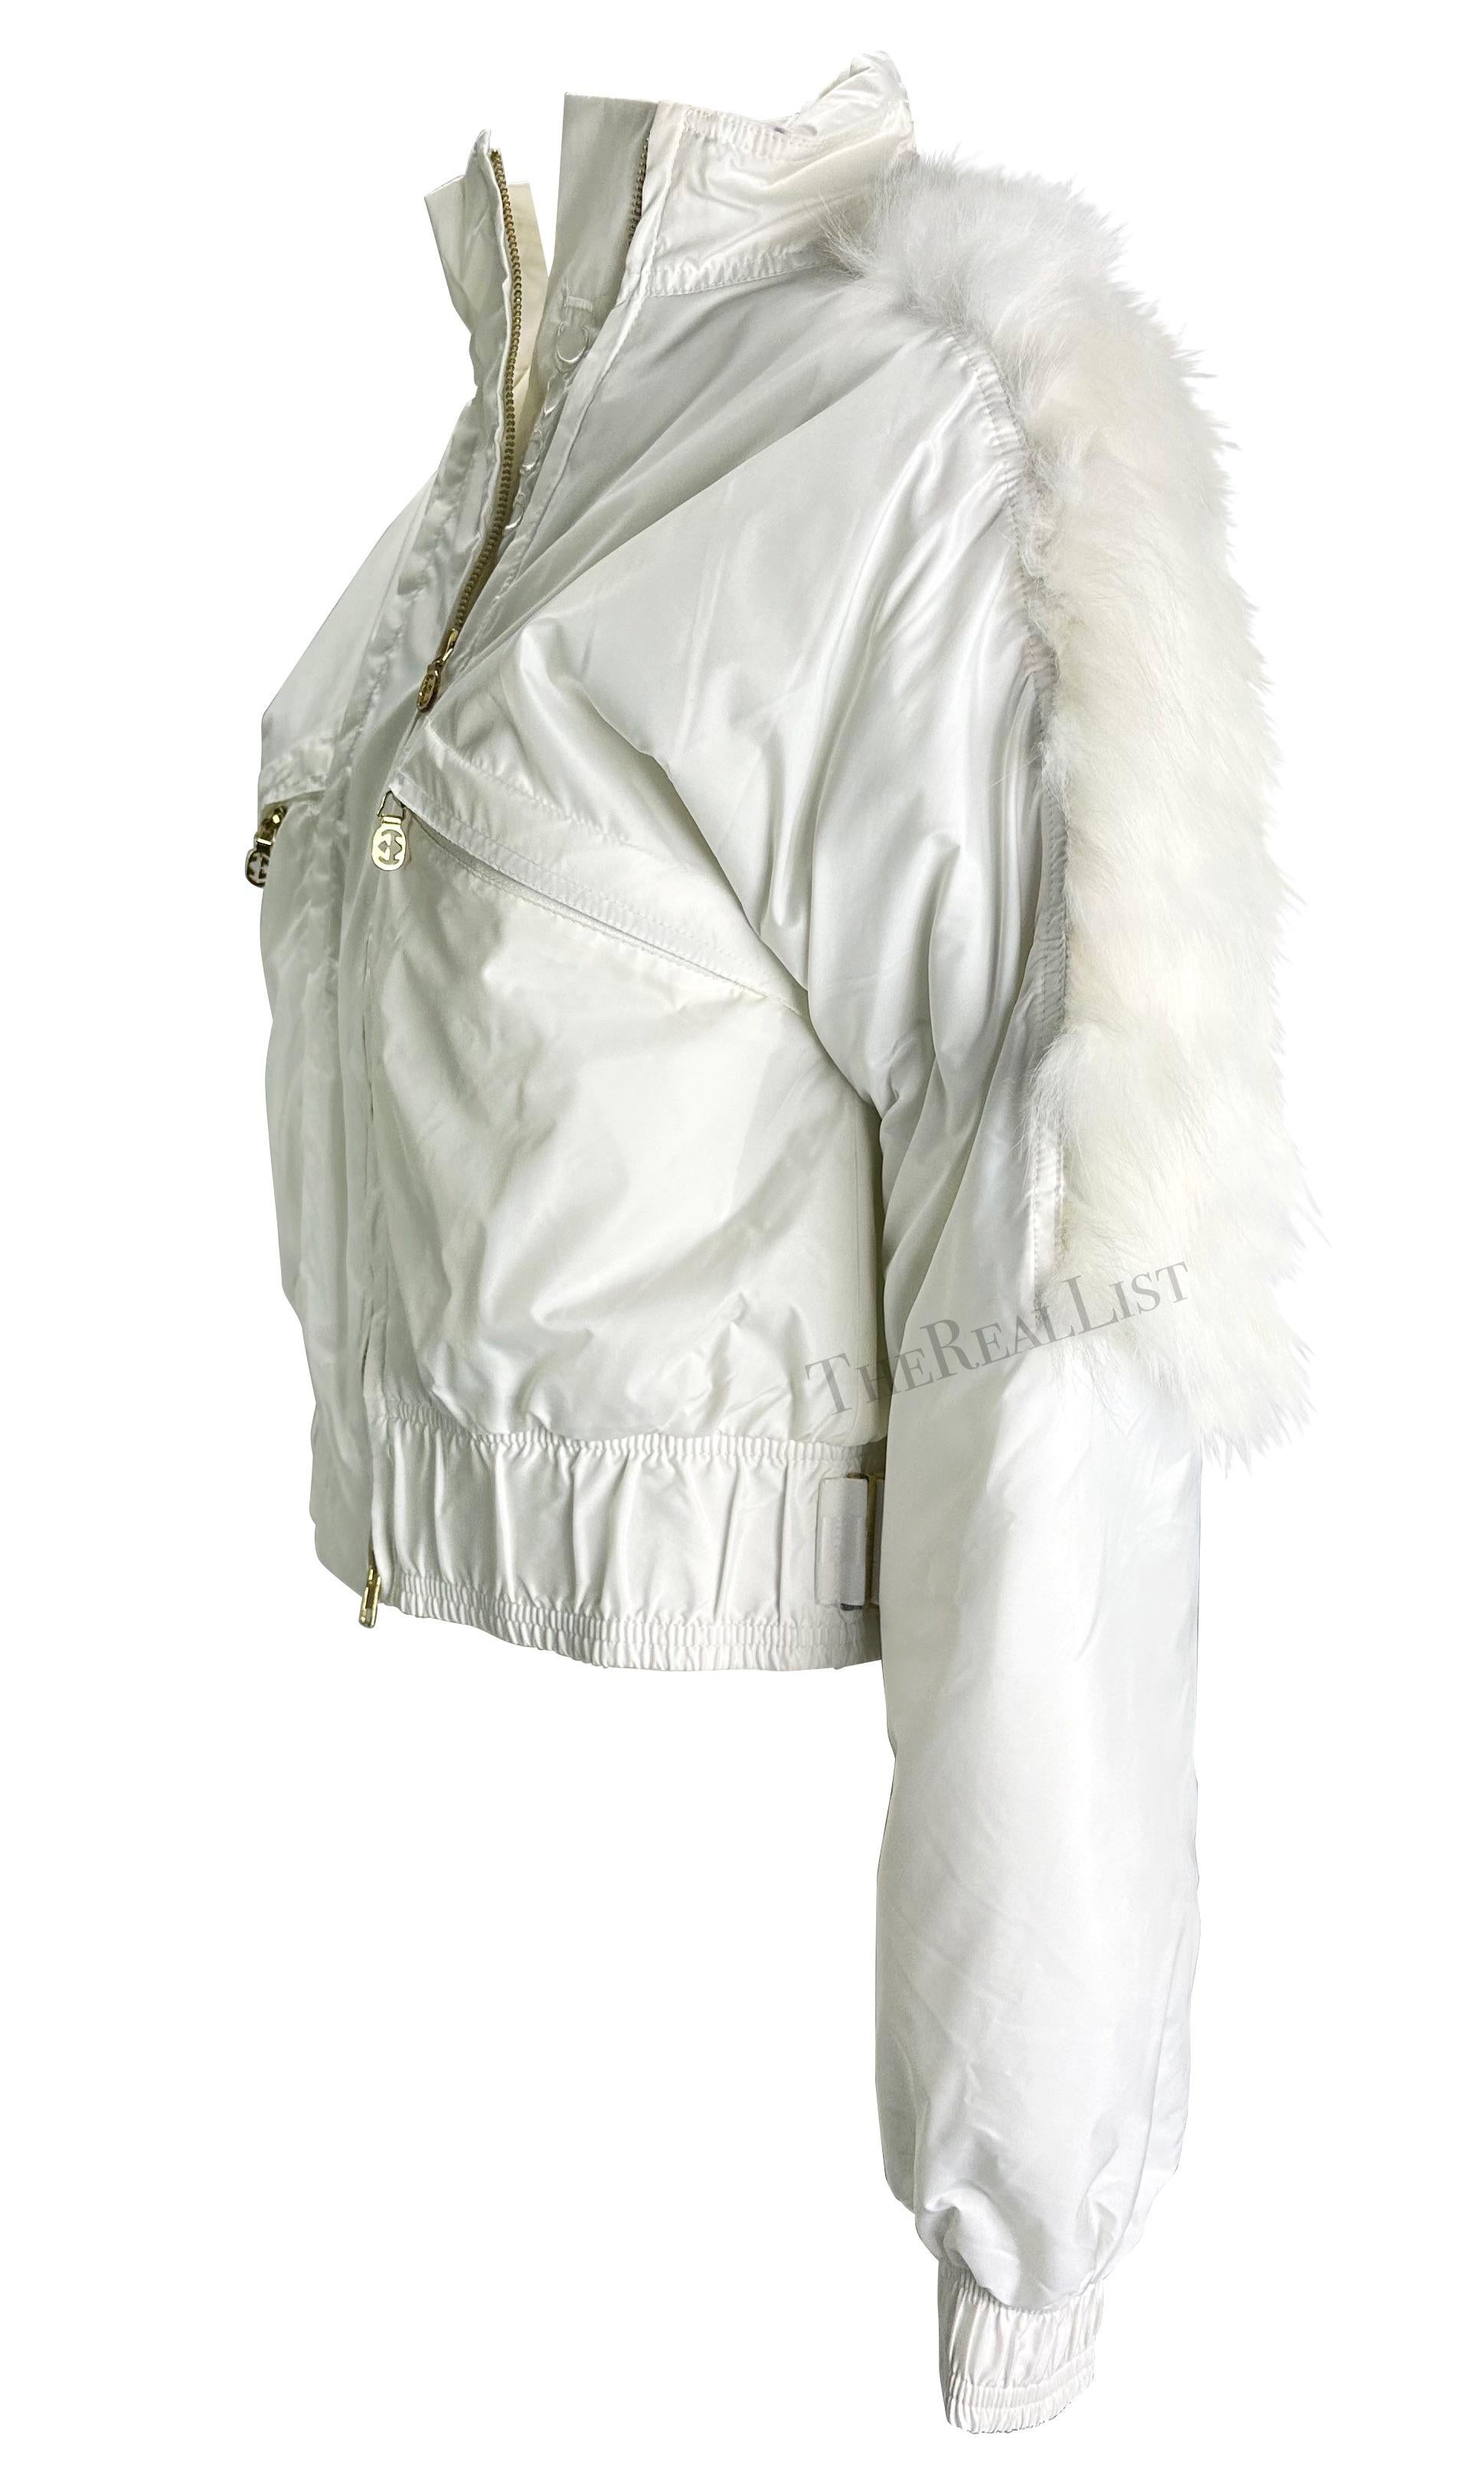 Whiting présente une magnifique veste polaire blanche Gucci, dessinée par Tom Ford. Issue de la collection automne/hiver 2004, cette veste d'hiver présente une bordure en fourrure, le logo Gucci brodé, des ferrures GG dorées et une capuche cachée.